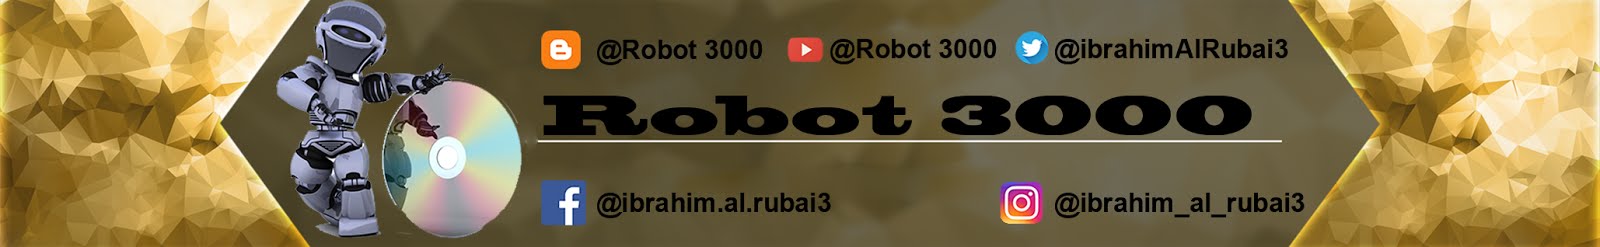 Robot 3000